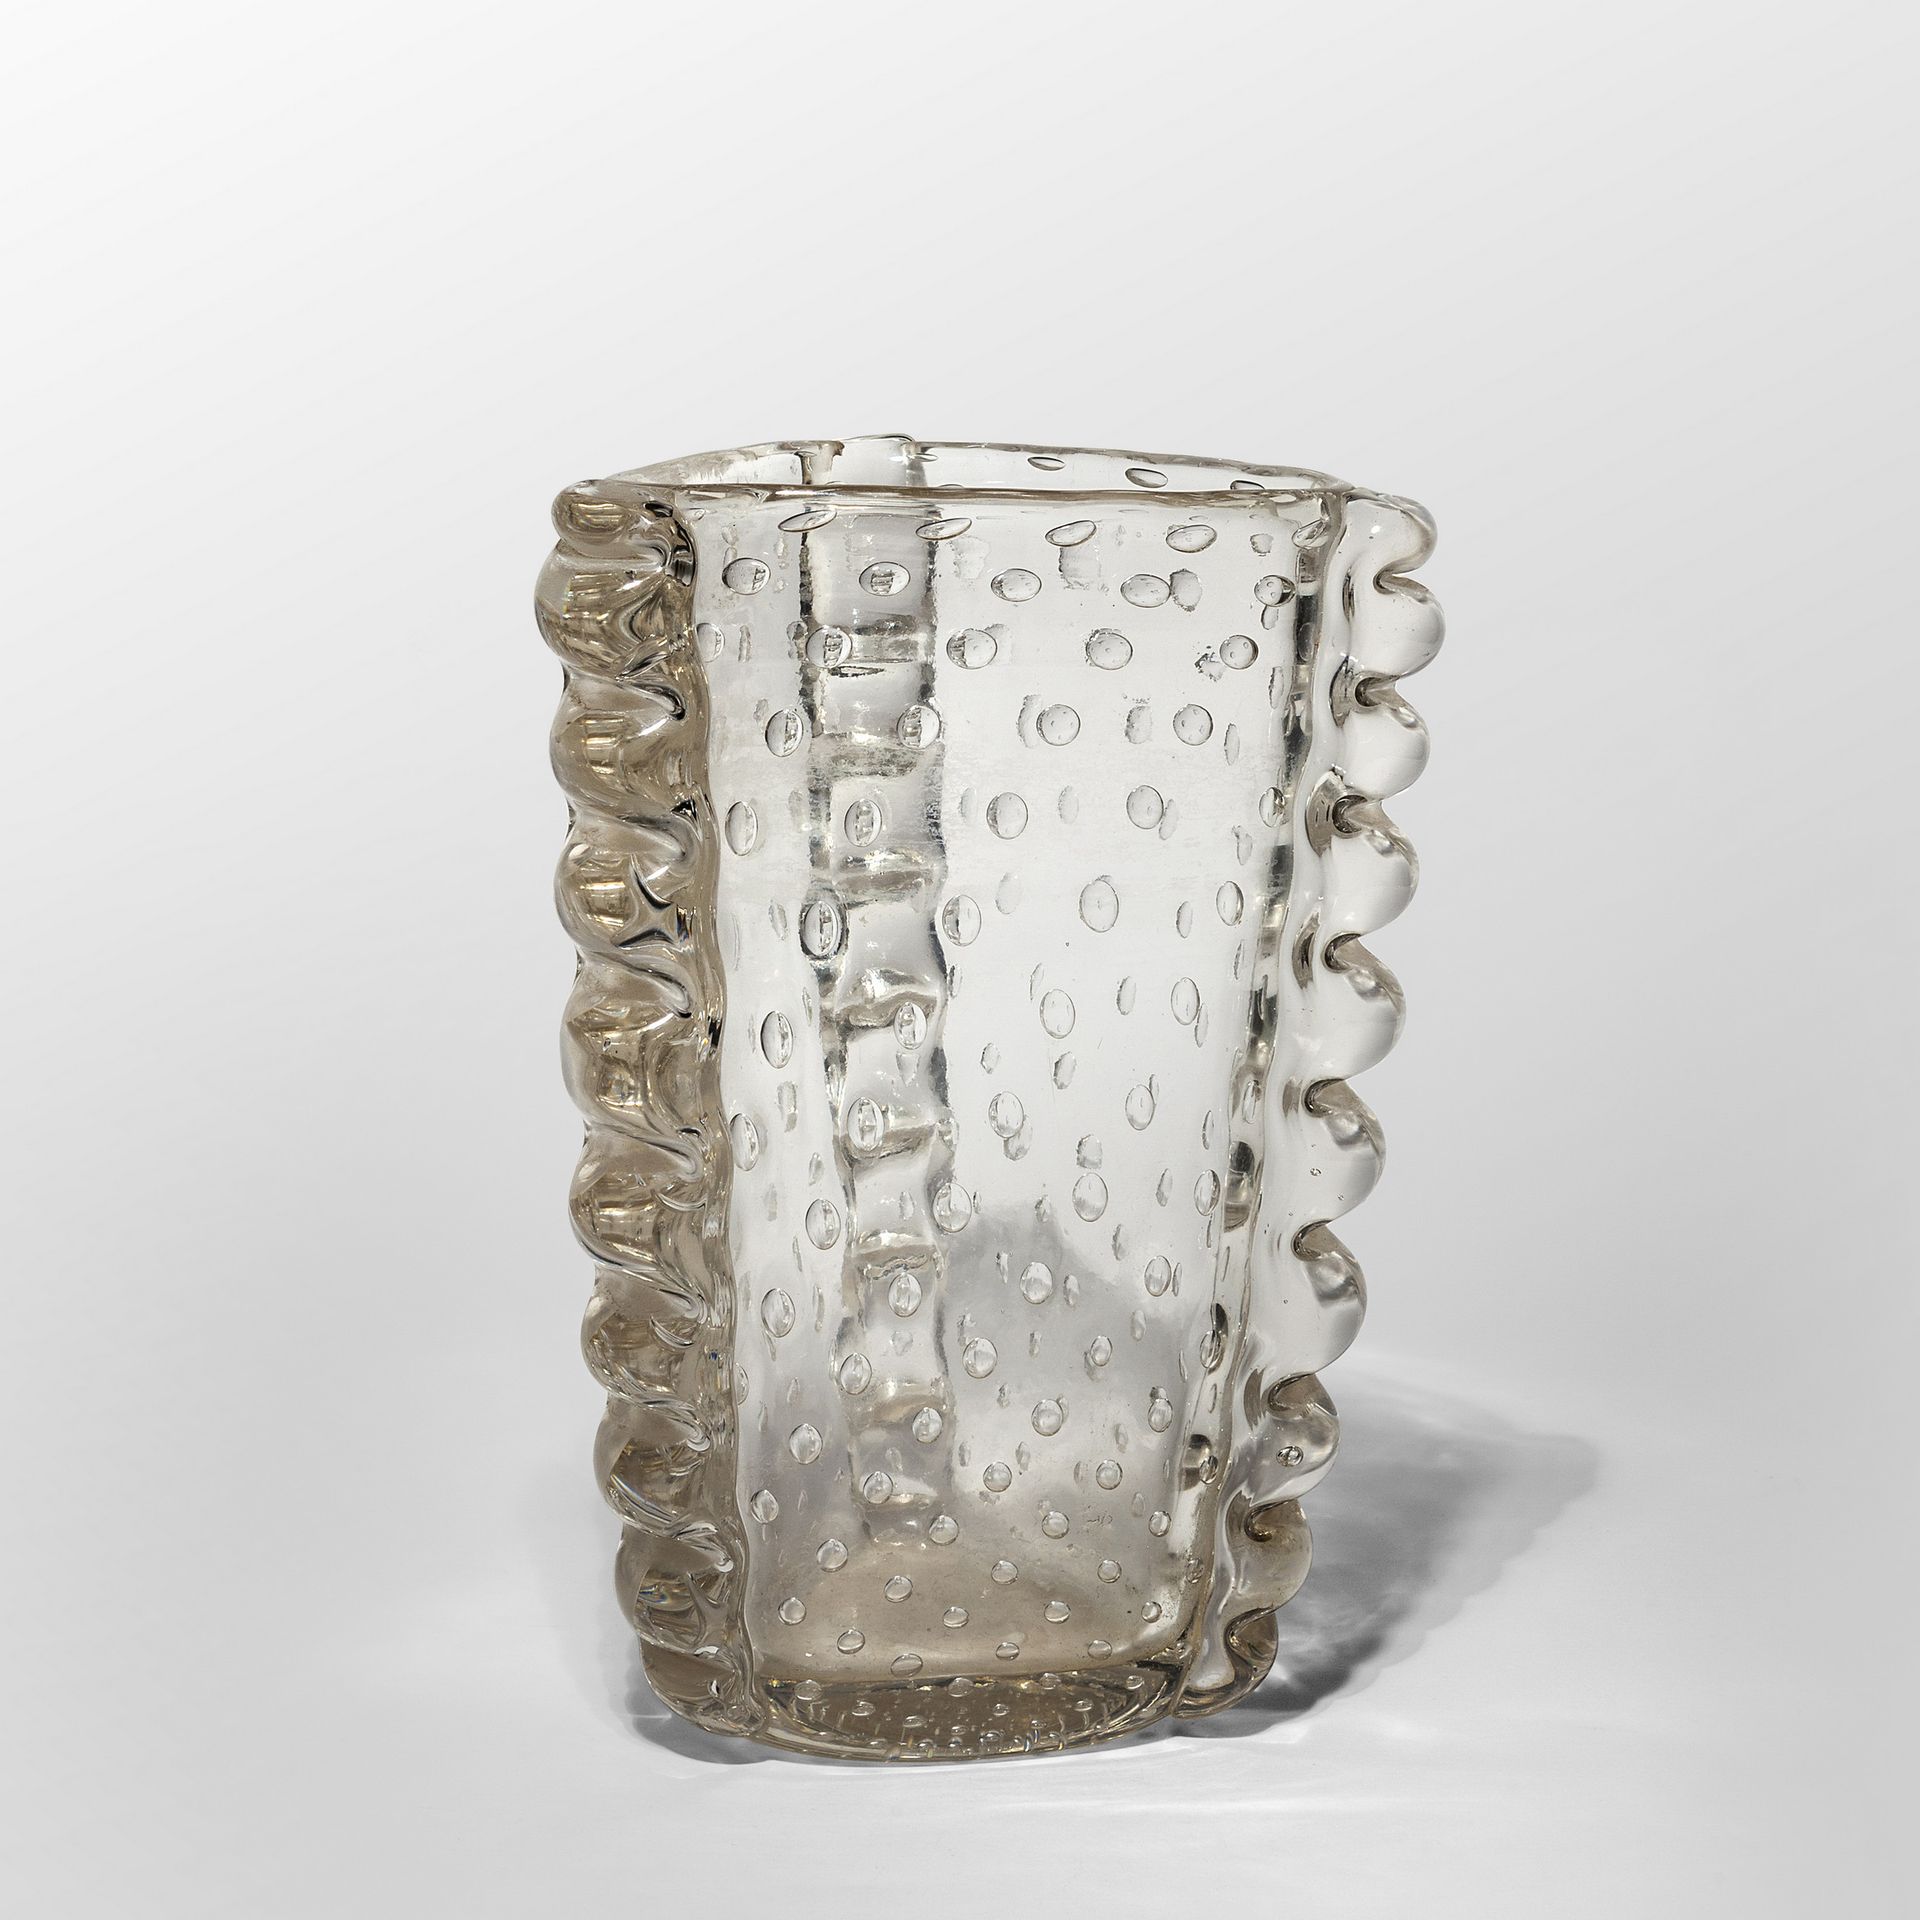 BAROVIER ERCOLE BAROVIER & TOSO ERCOLE BAROVIER & TOSO
一个透明的玻璃花瓶，横截面为三角形，应用了mori&hellip;